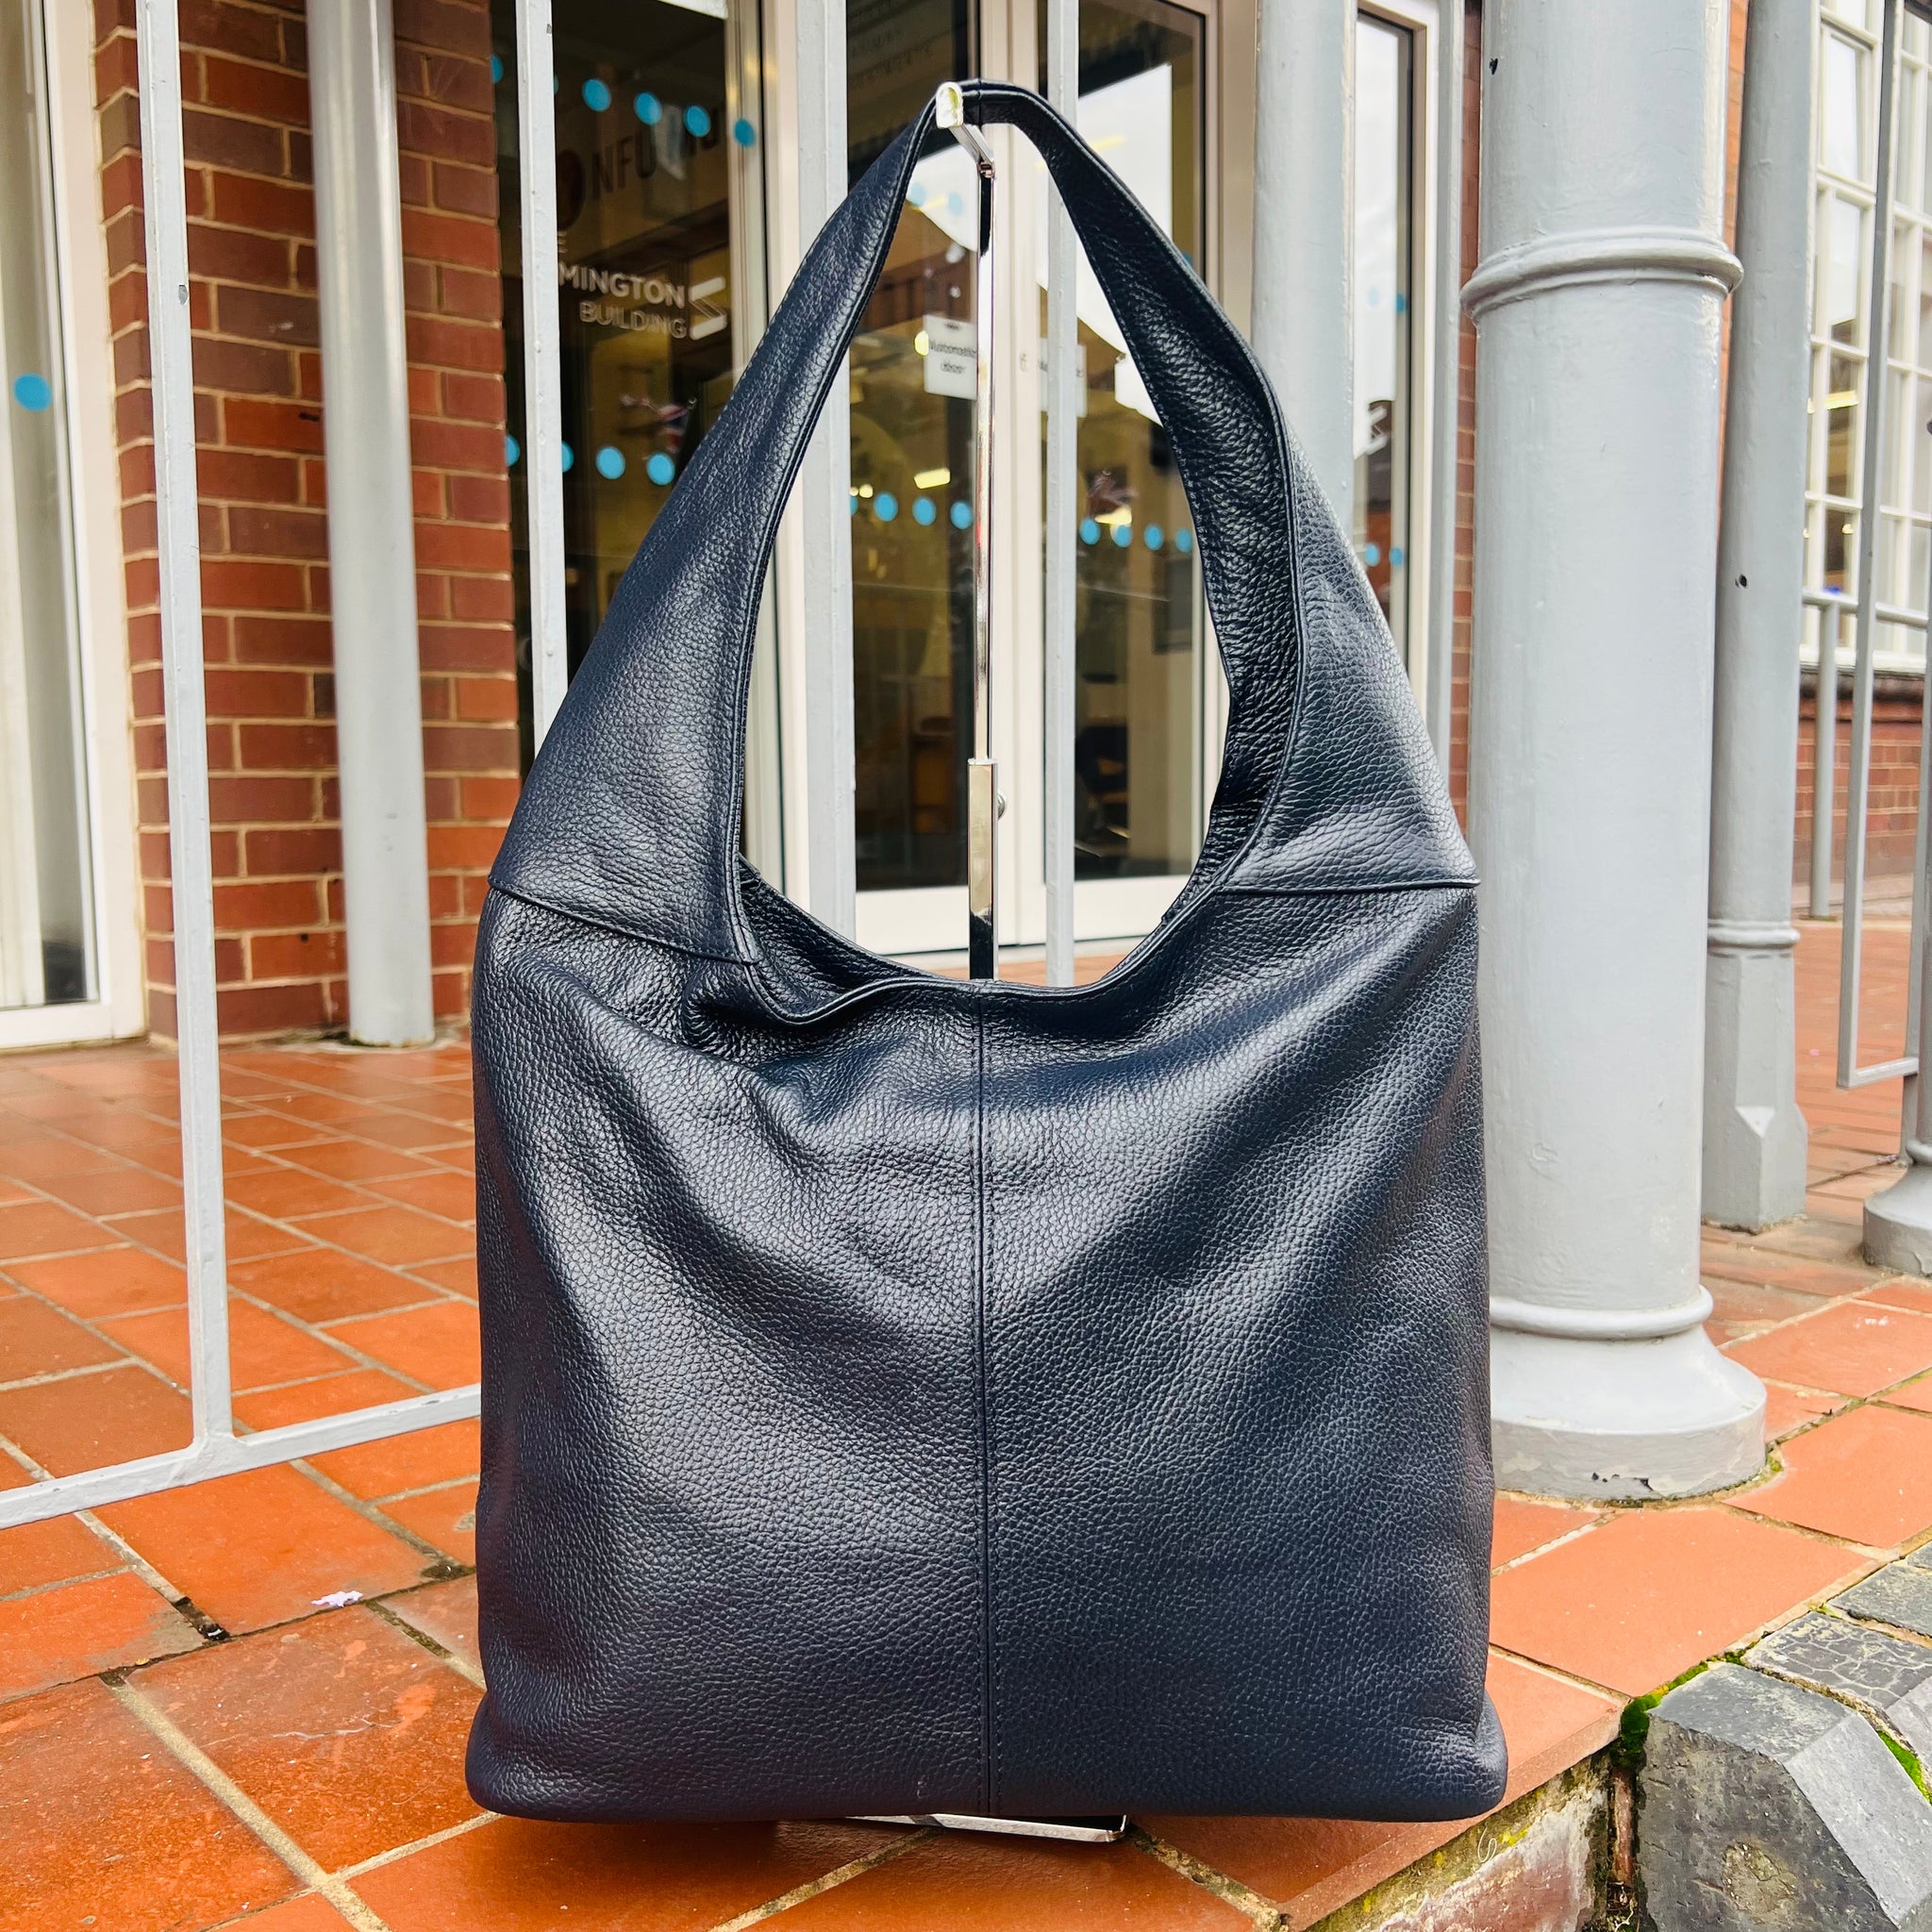 Leather Shoulder Hobo Bag